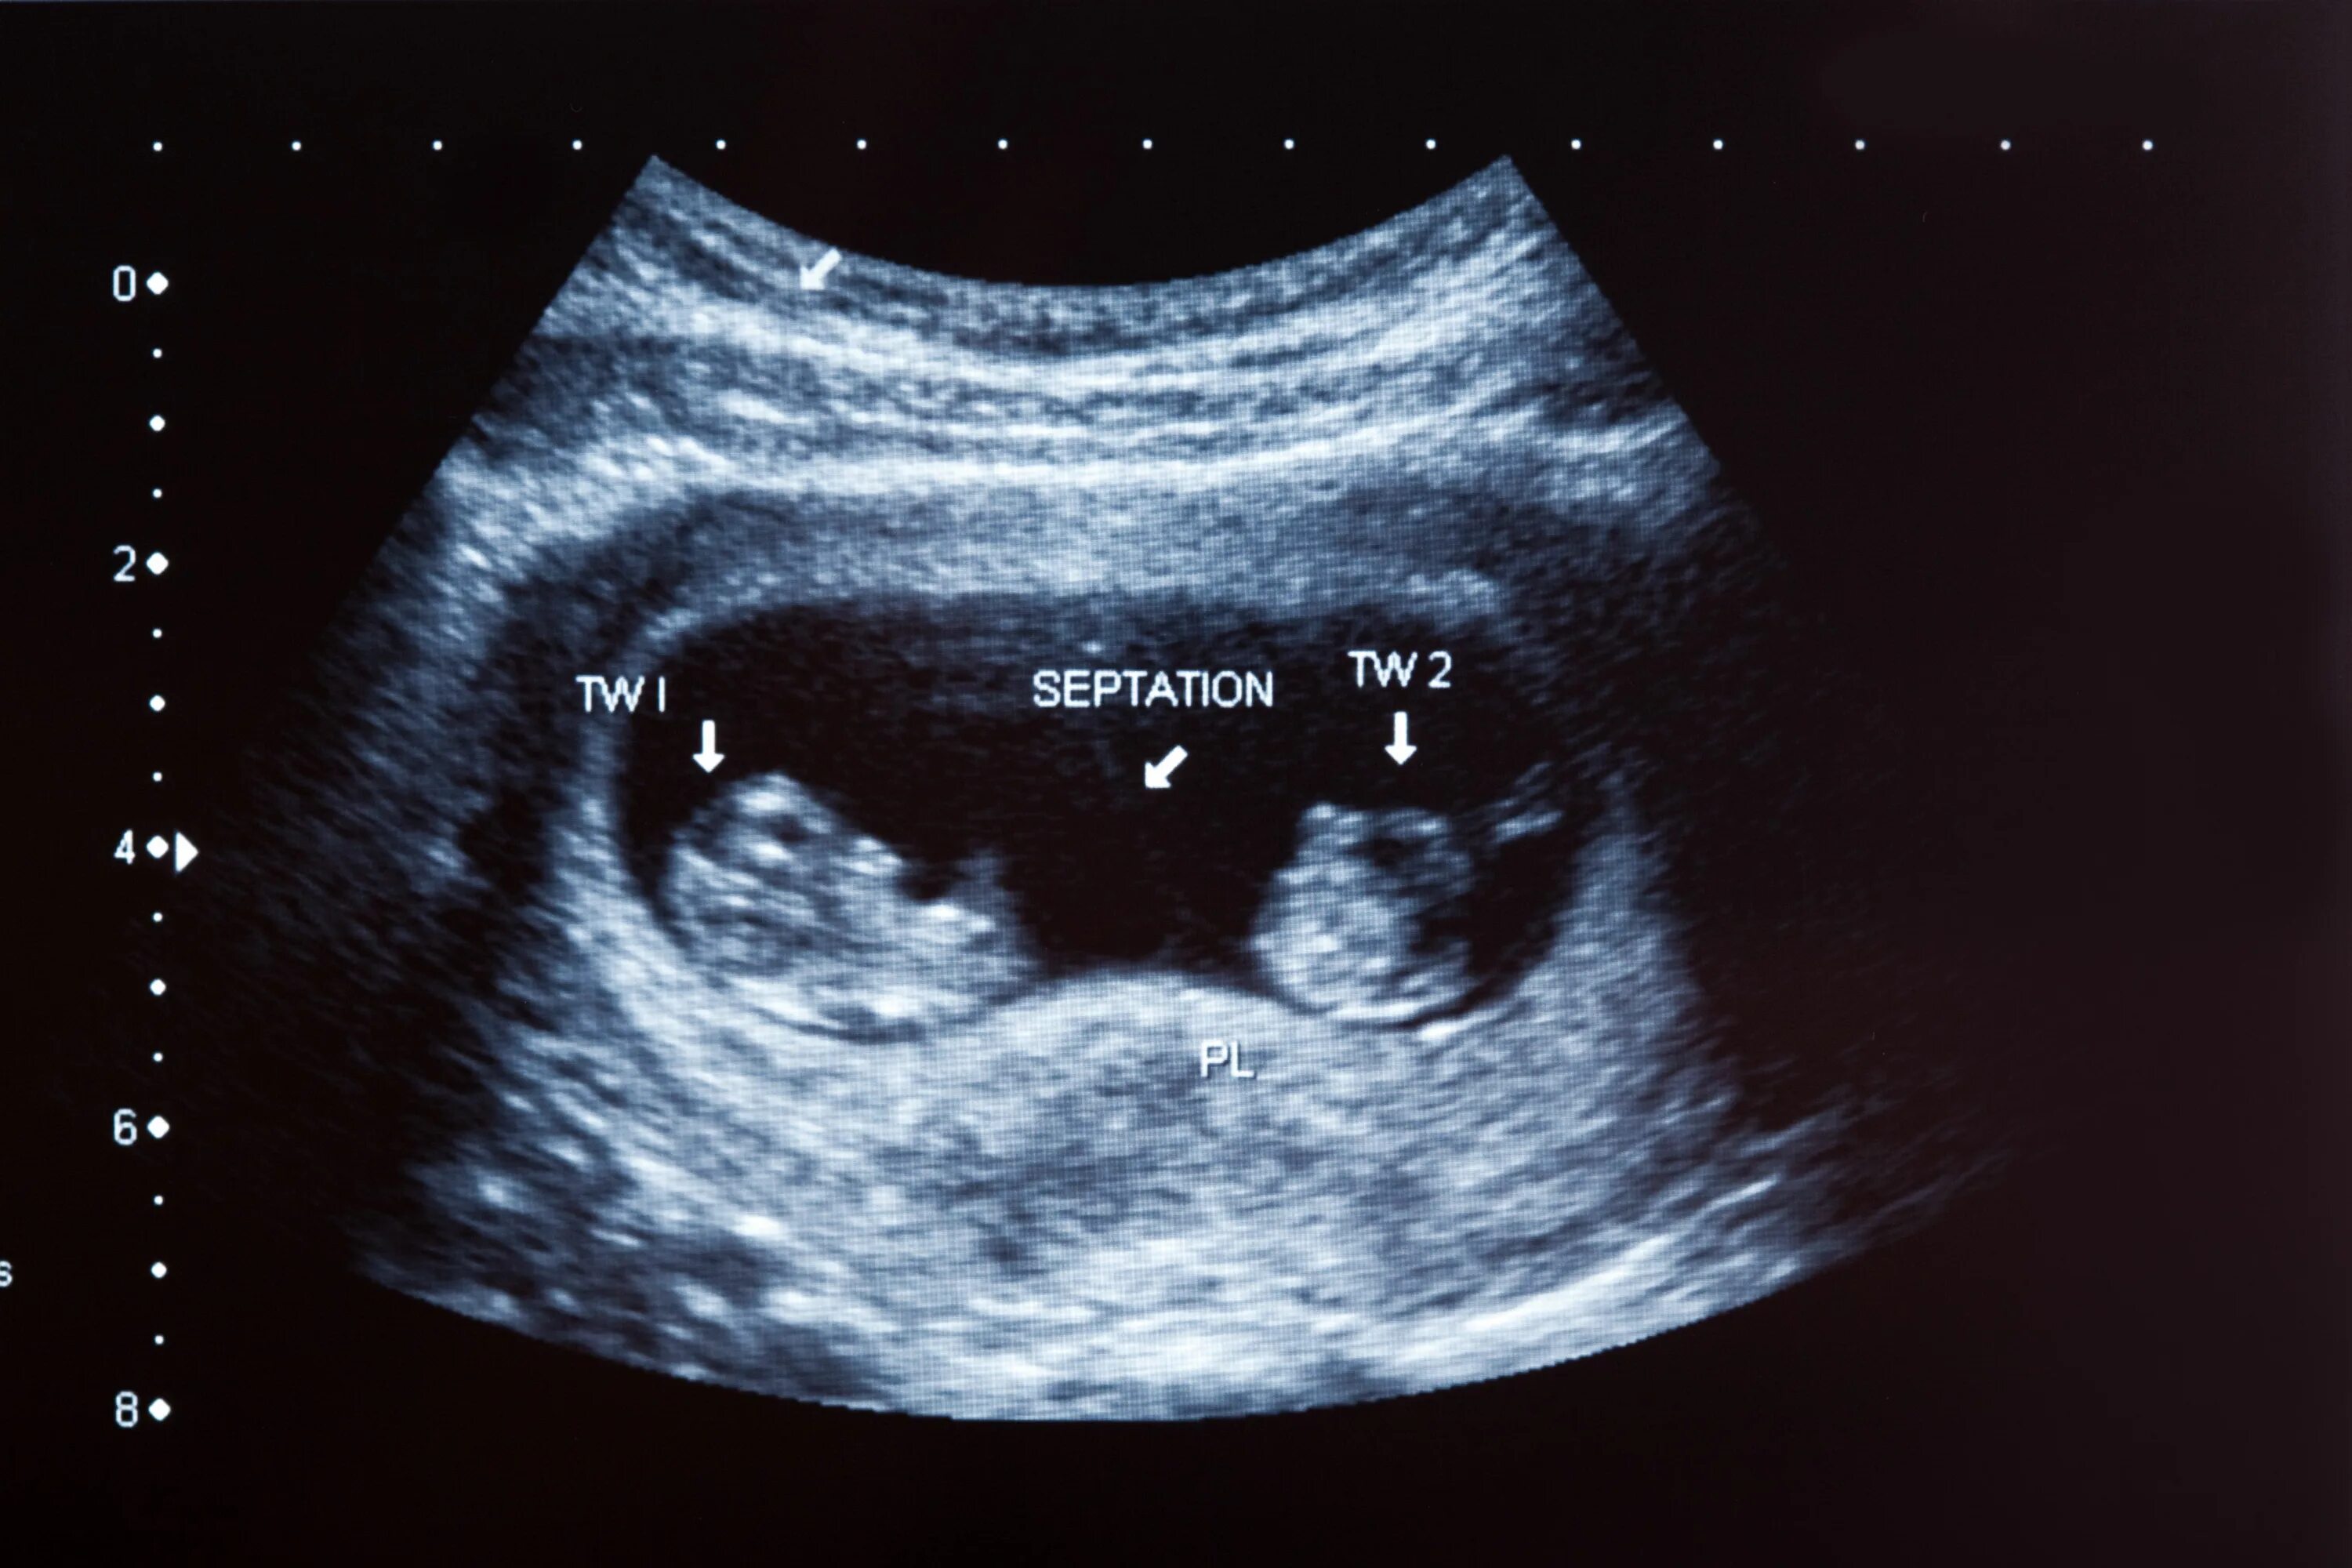 УЗИ 12 недель беременности двойня. УЗИ 10 недель беременности двойня. УЗИ 8 недель беременности двойня. УЗИ 20 недель беременности многоплодная беременность.